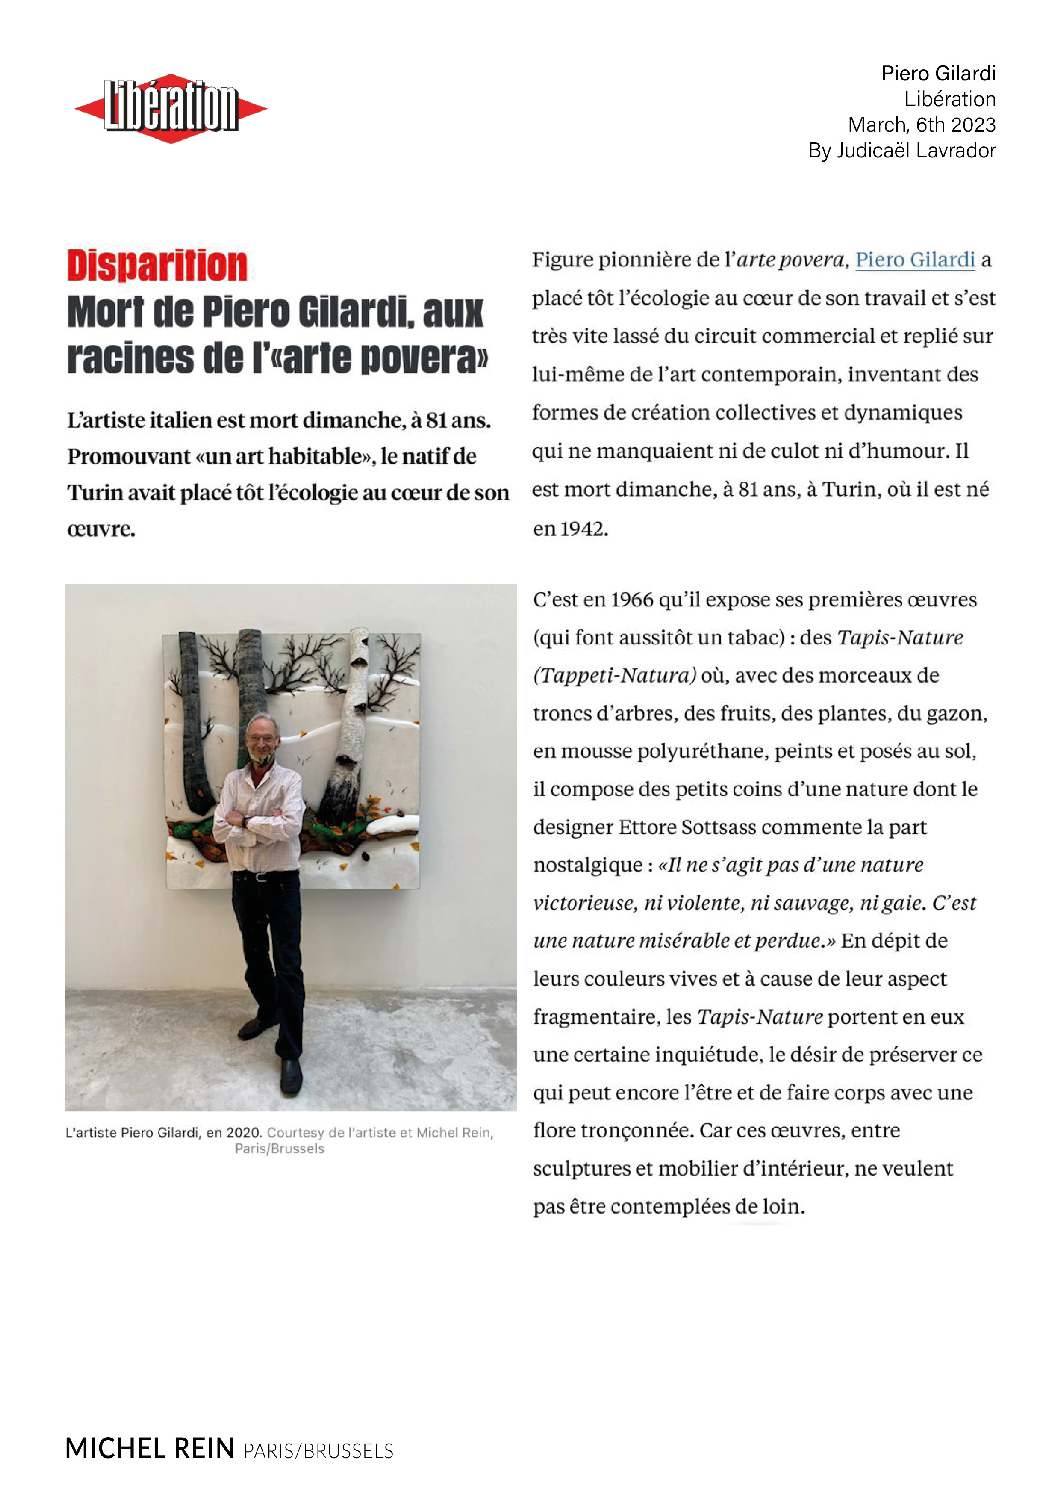 Mort de Piero Gilardi, aux racines de l'arte povera - Libération